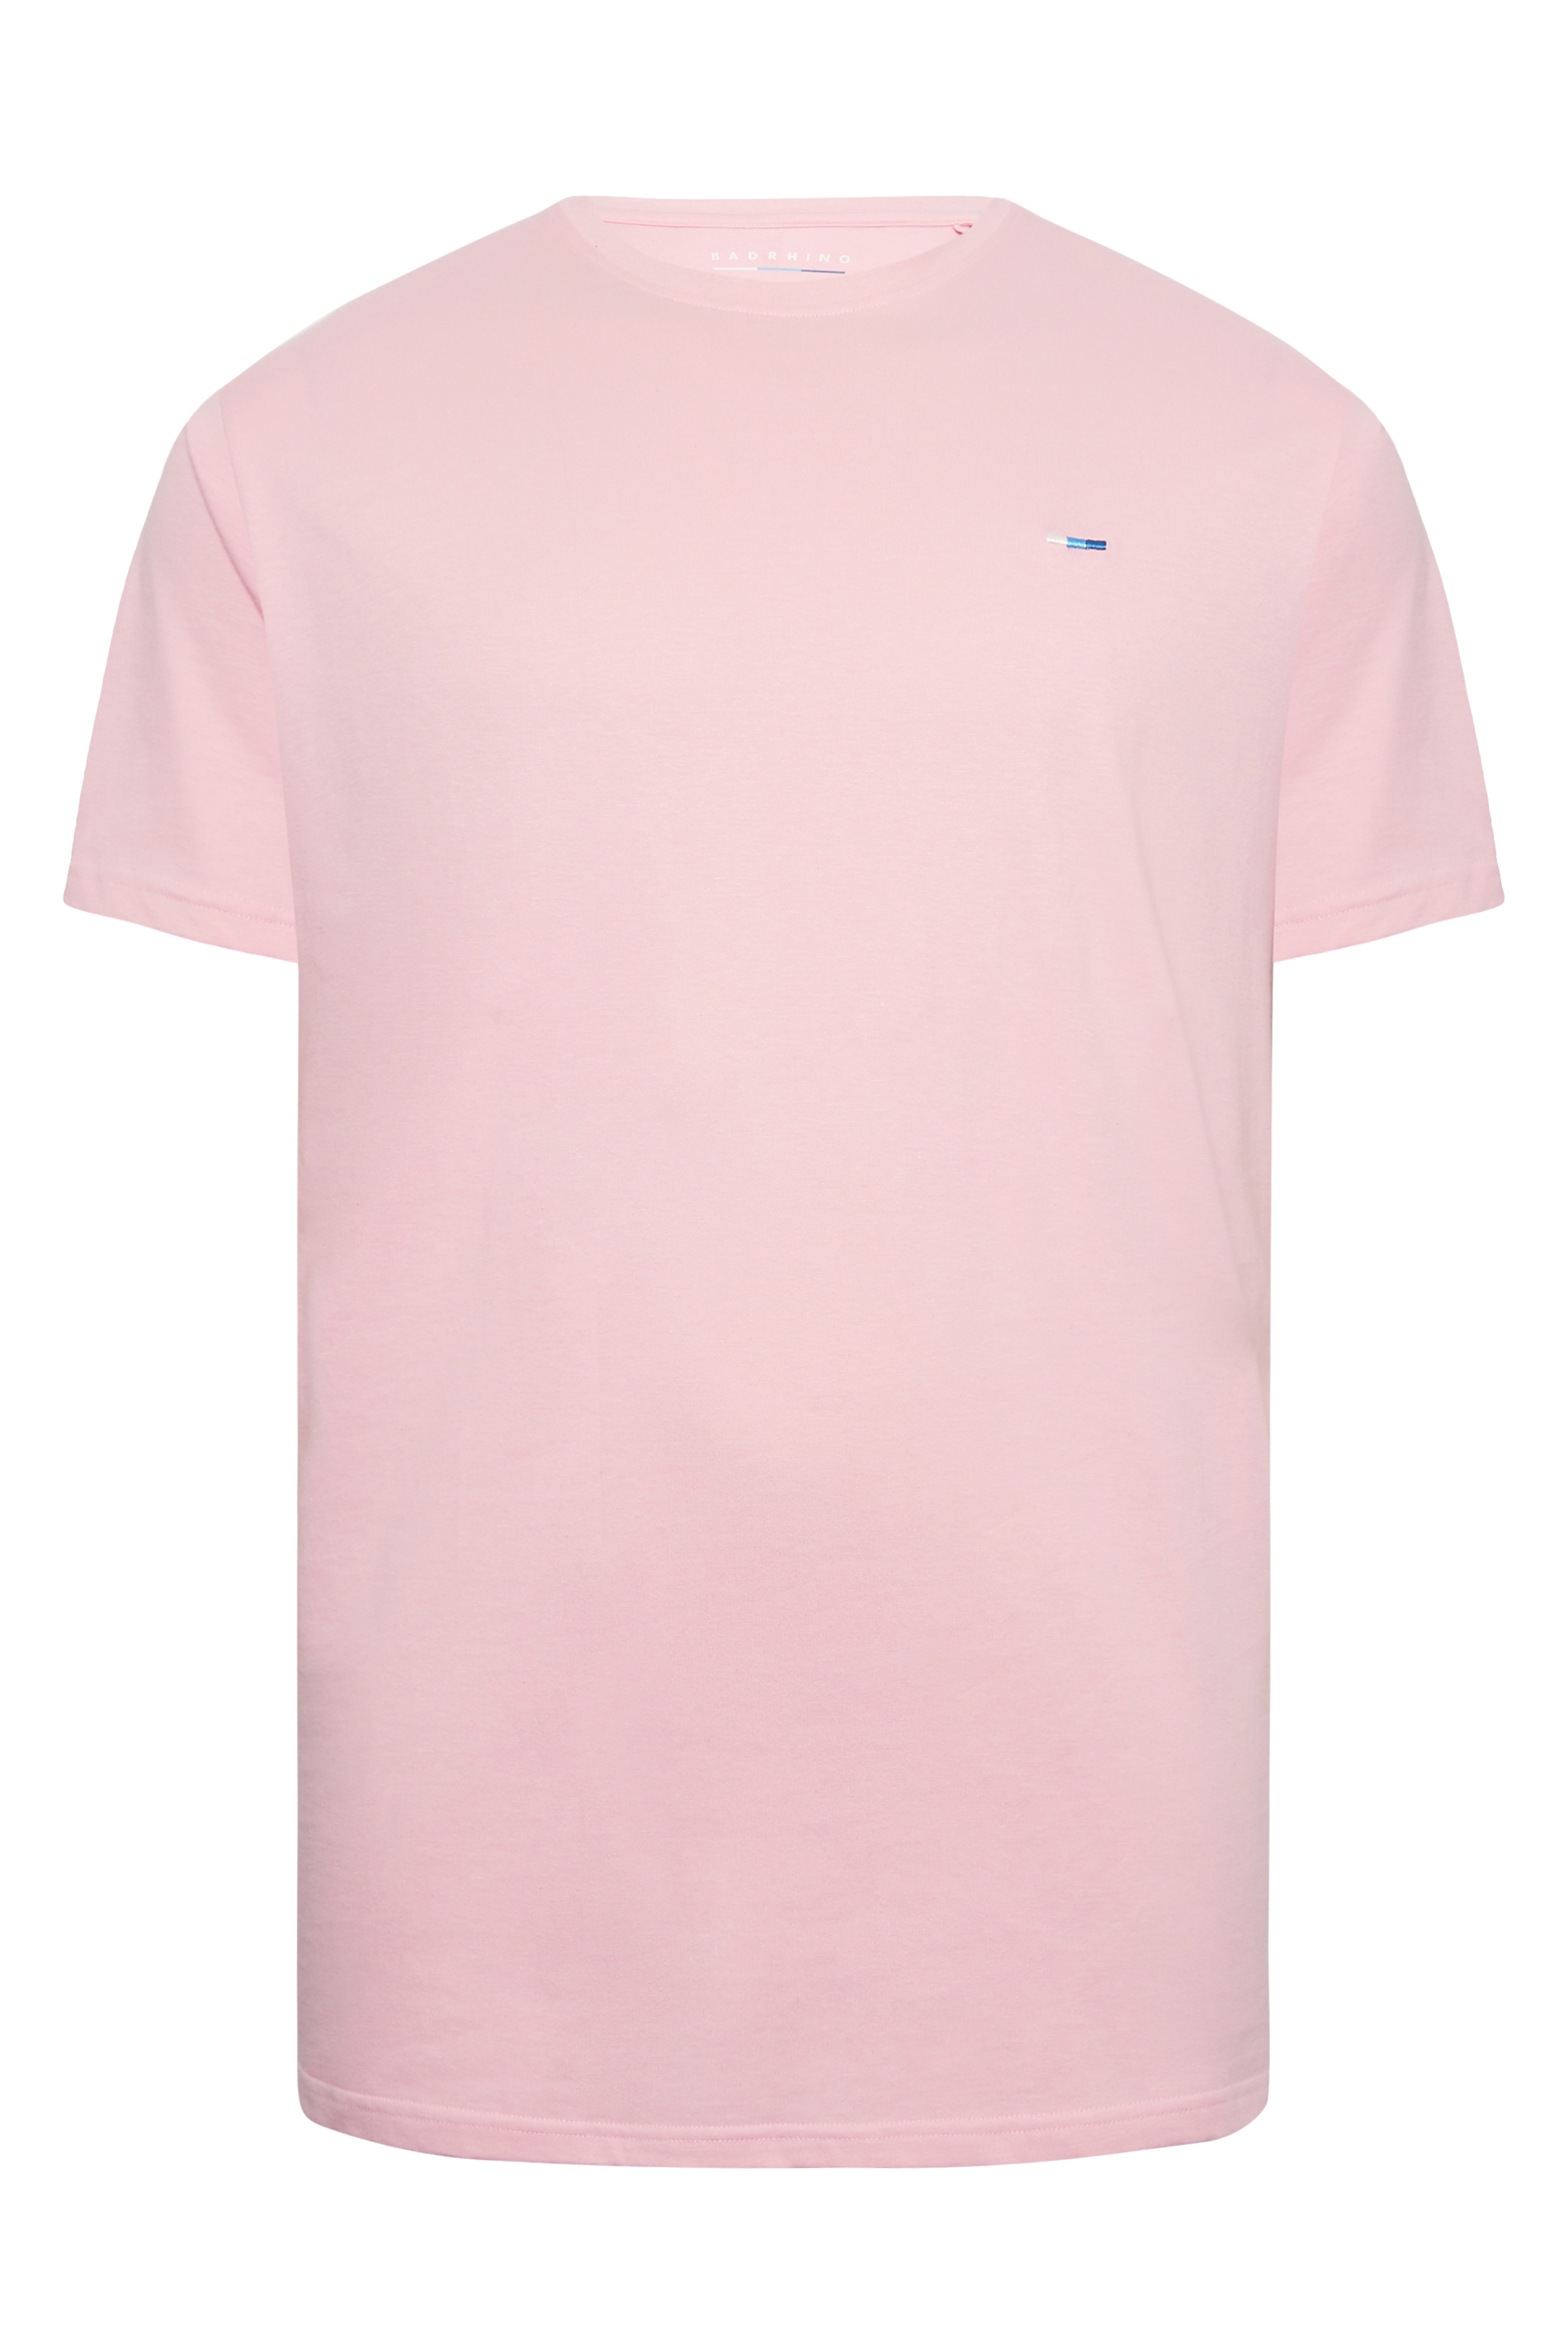 BadRhino Big & Tall Light Pink Core T-Shirt | BadRhino